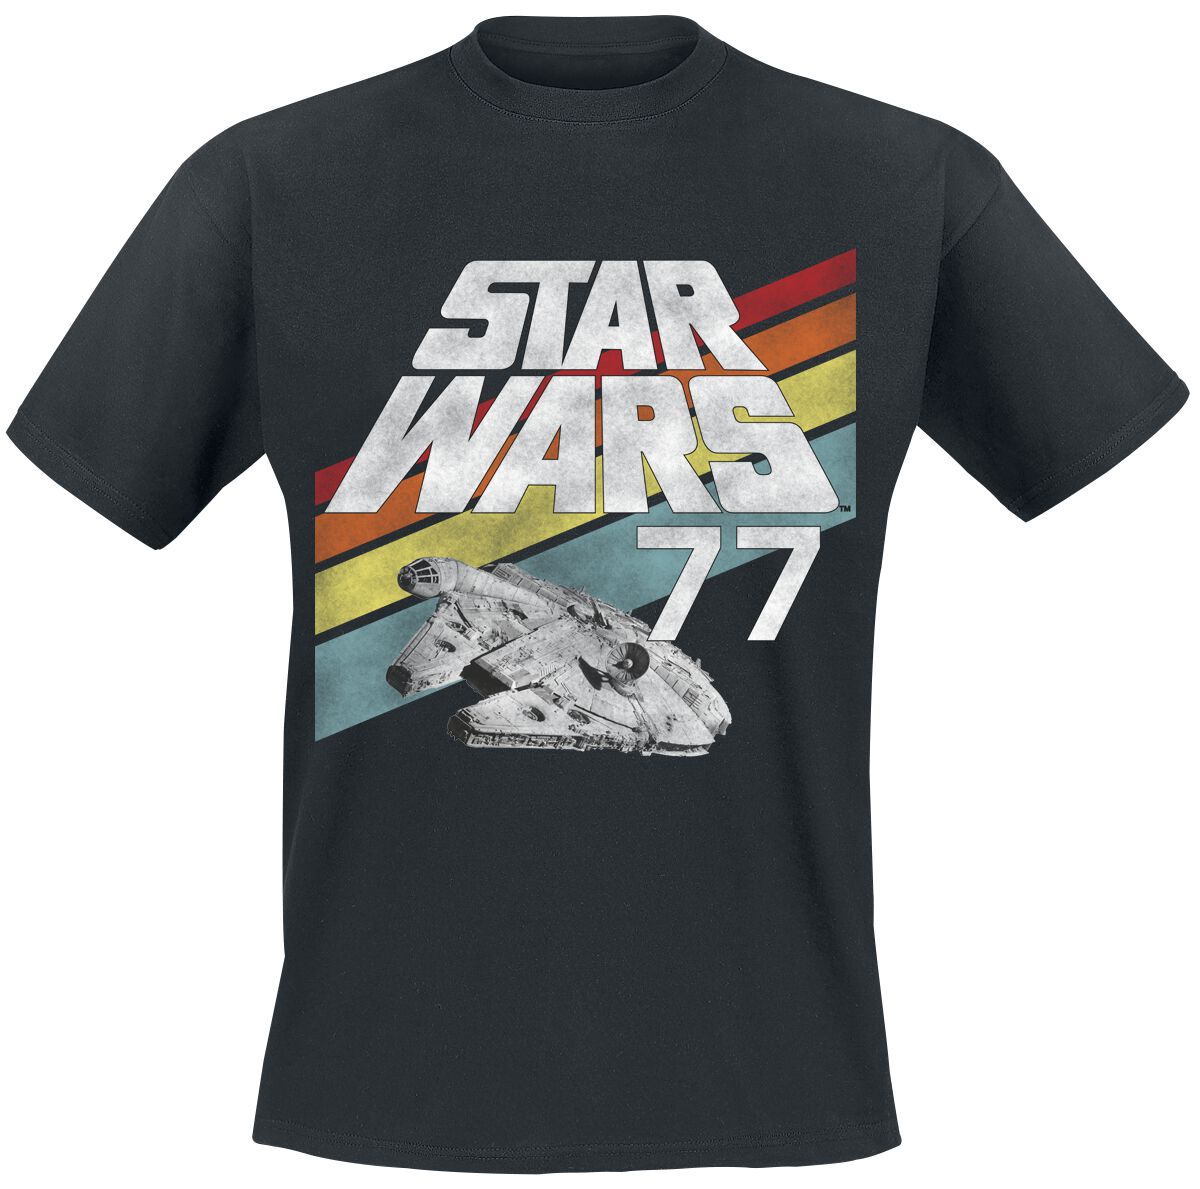 Star Wars Star Wars - 77 T-Shirt black